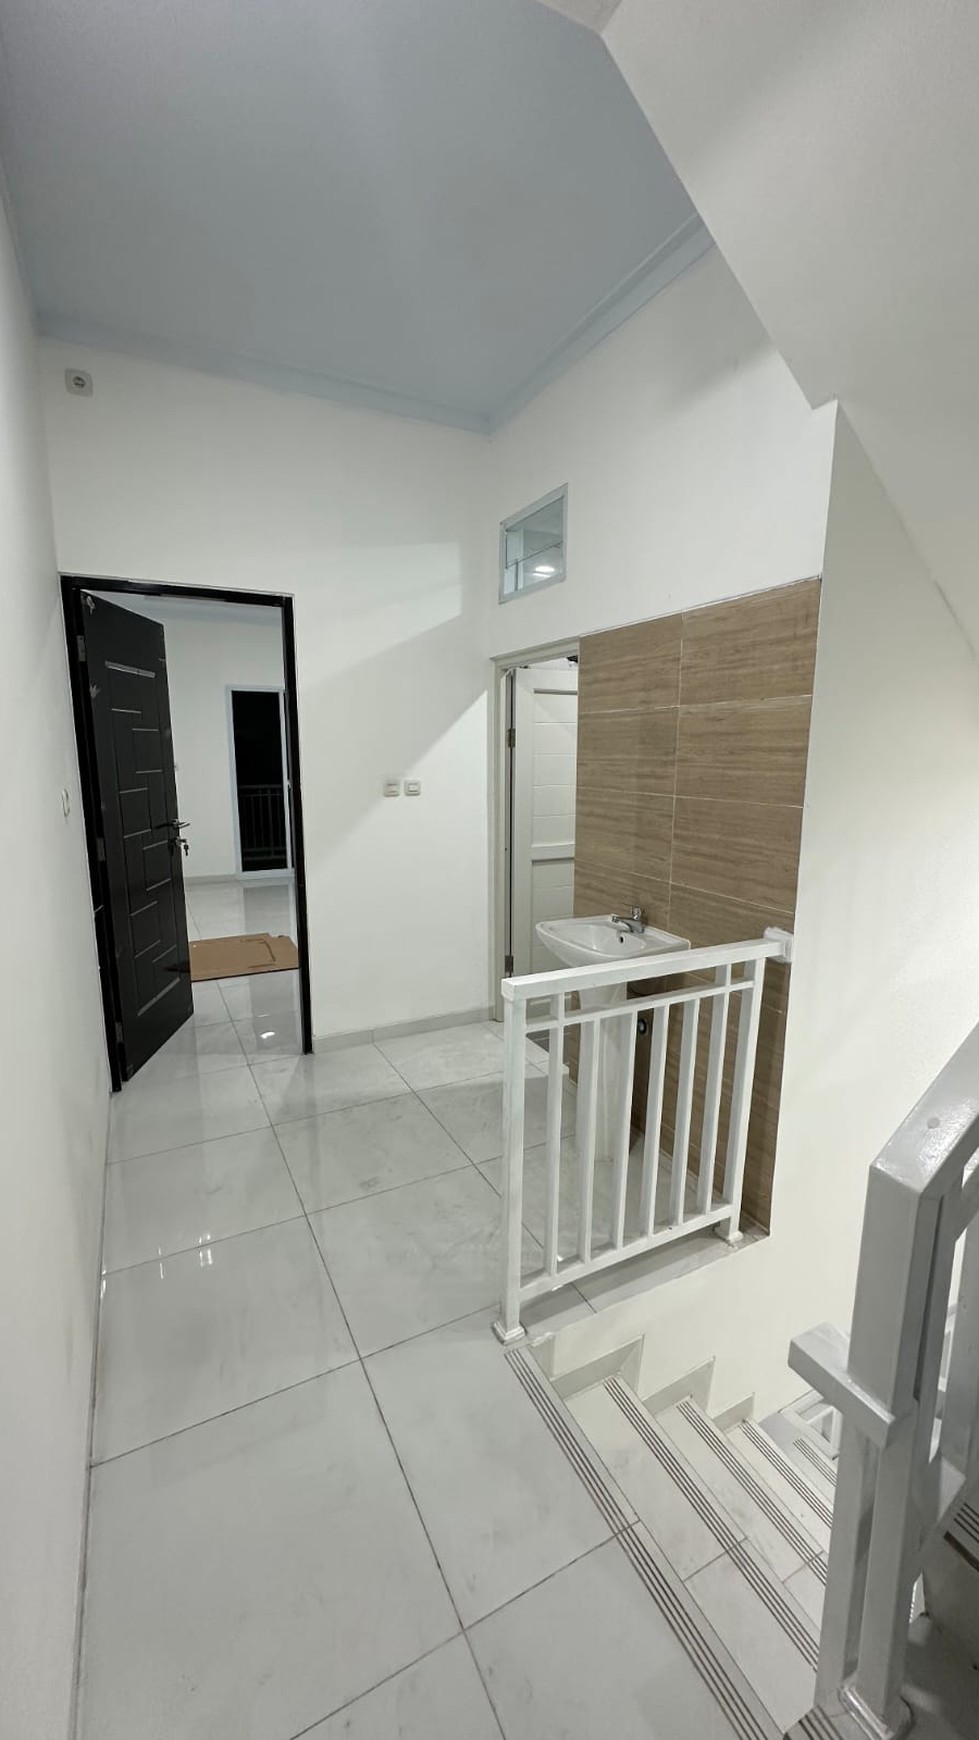 Rumah Baru 3 Lantai SHM Di Tanjung Duren Jakarta Barat